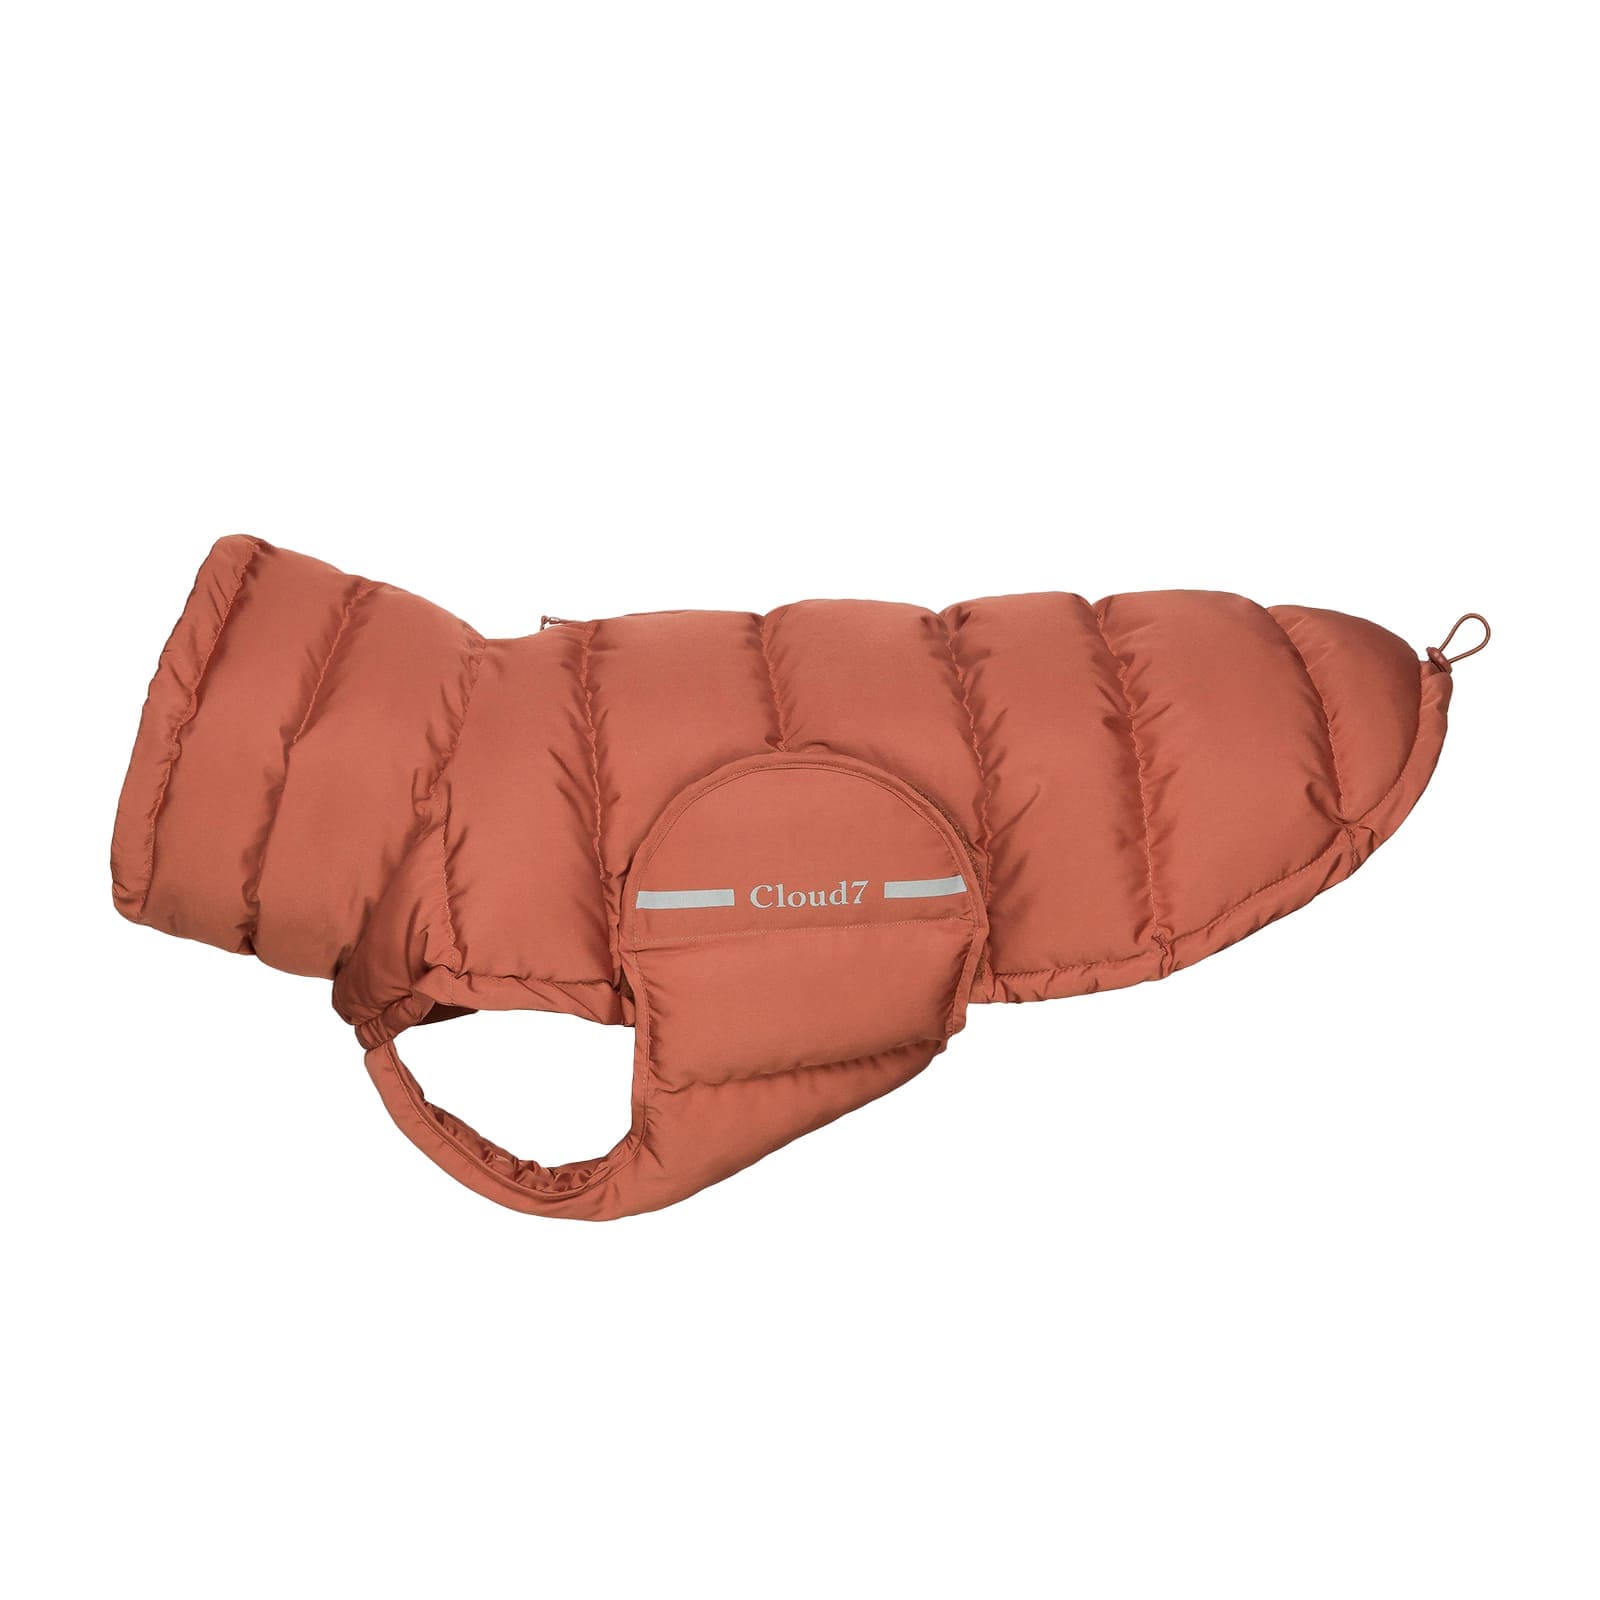 Backsteinrote Winterpuffer-Jacke für Hunde mit kleiner Hersteller-Aufschrift